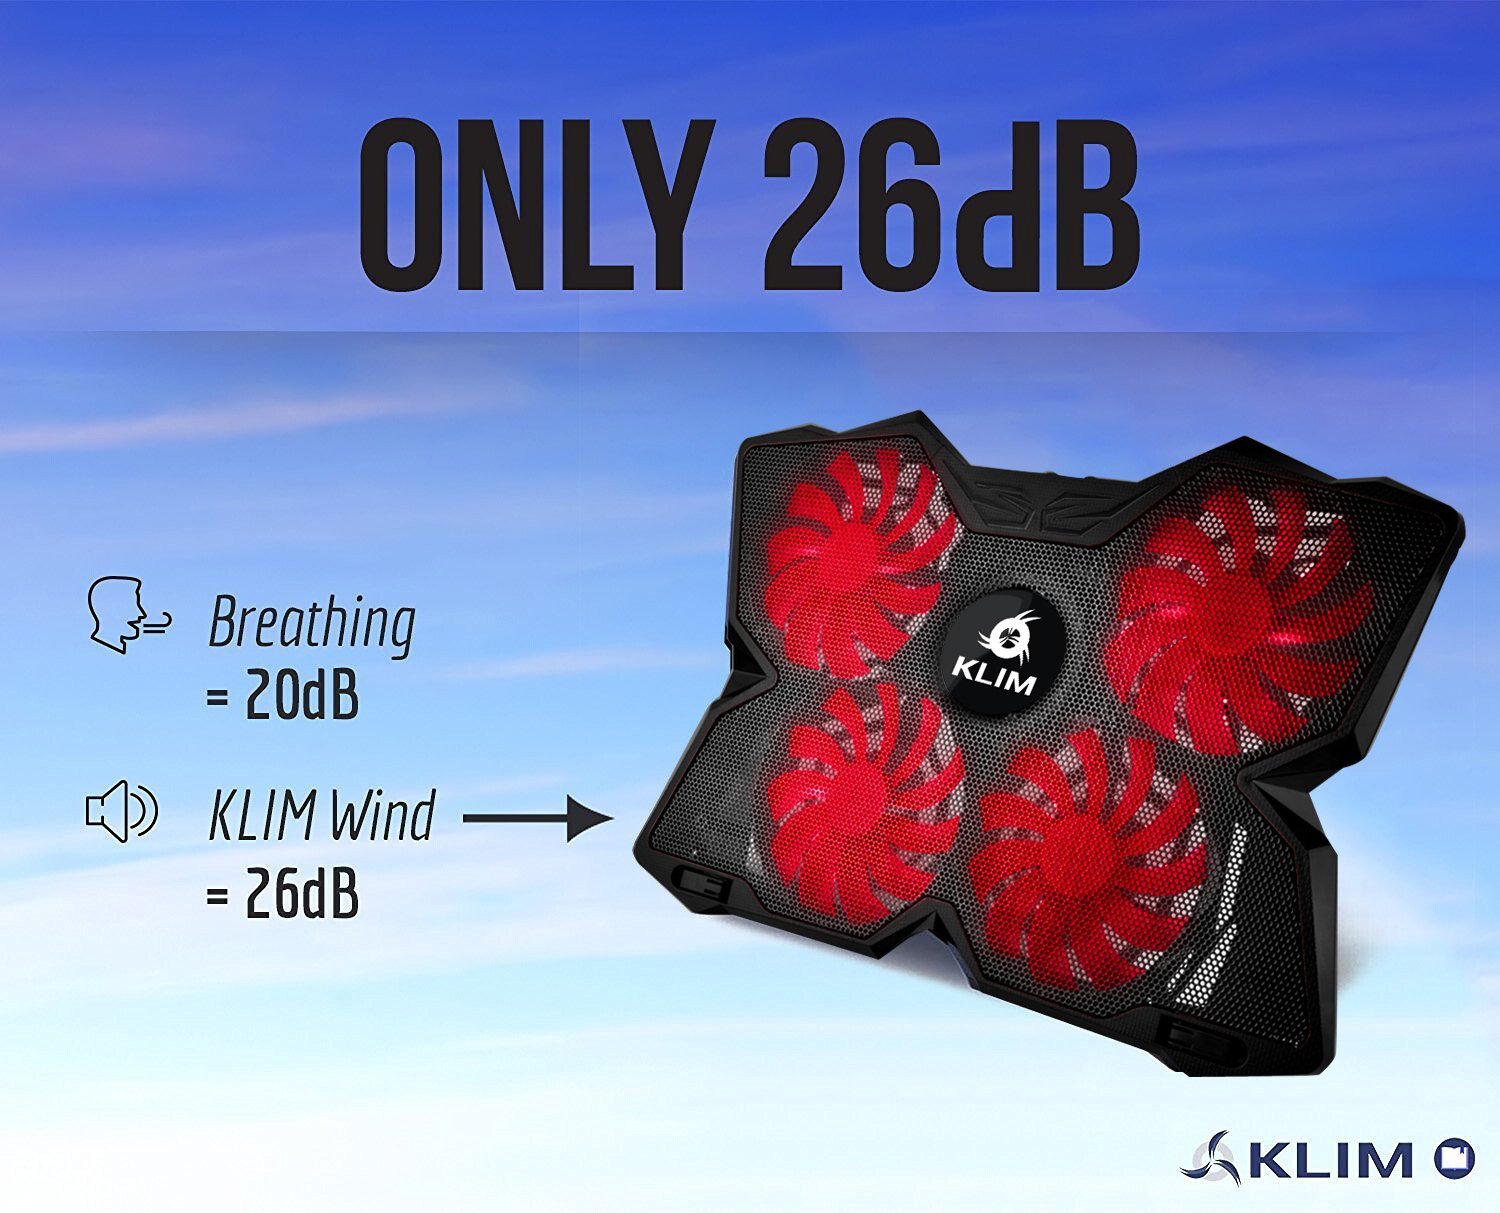 KLIM Wind Refroidisseur PC Portable - Le Plus Puissant - Refroidissement Rapide - 4 Ventilateurs Support Ventilé Gamer Gaming Plaque (Rouge et Noir) clicktofournisseur.com